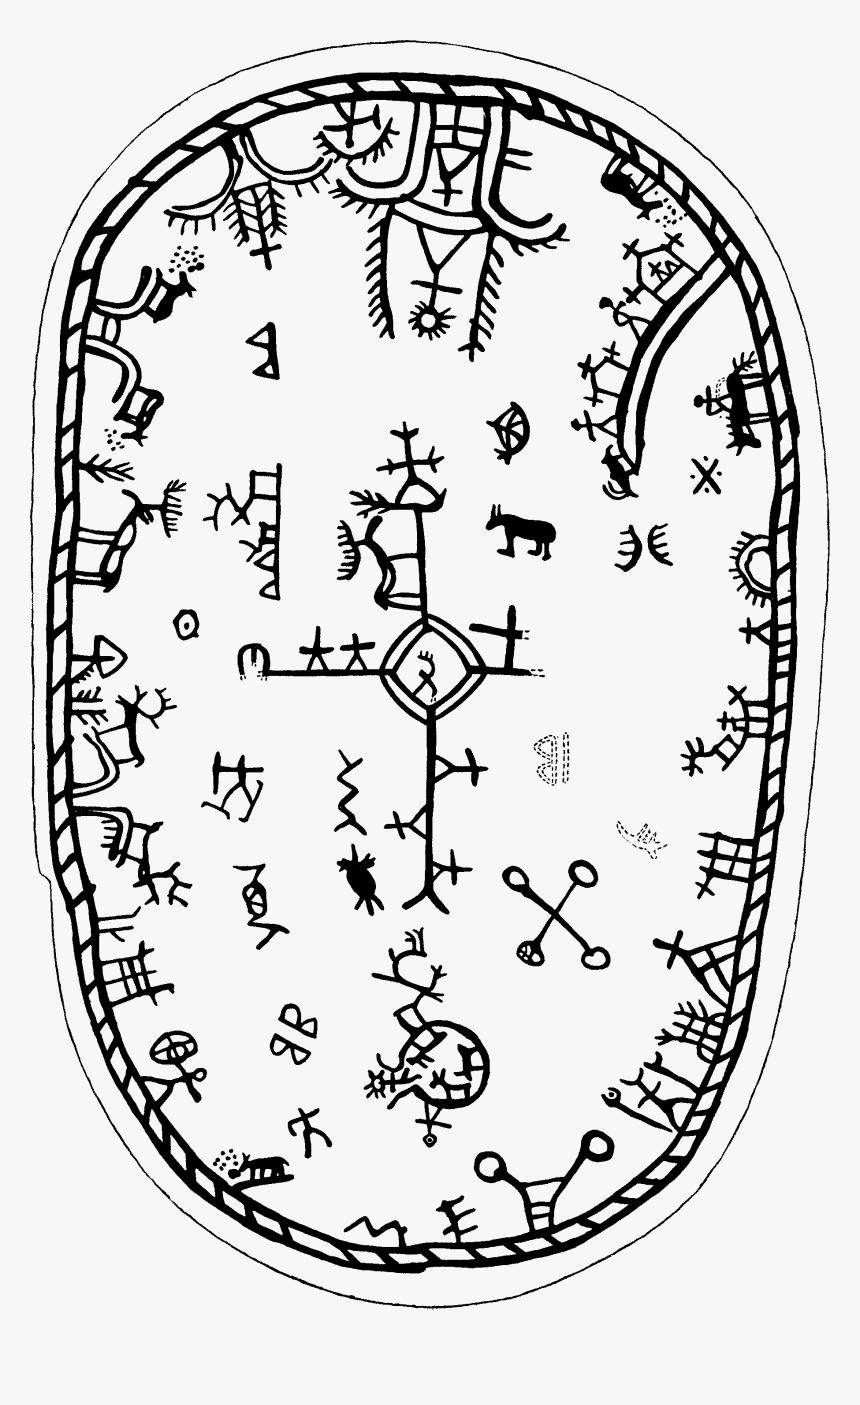 Sámi Mythology Shaman Drum Samisk Mytologi Schamantrumma - Sami Rune Drum